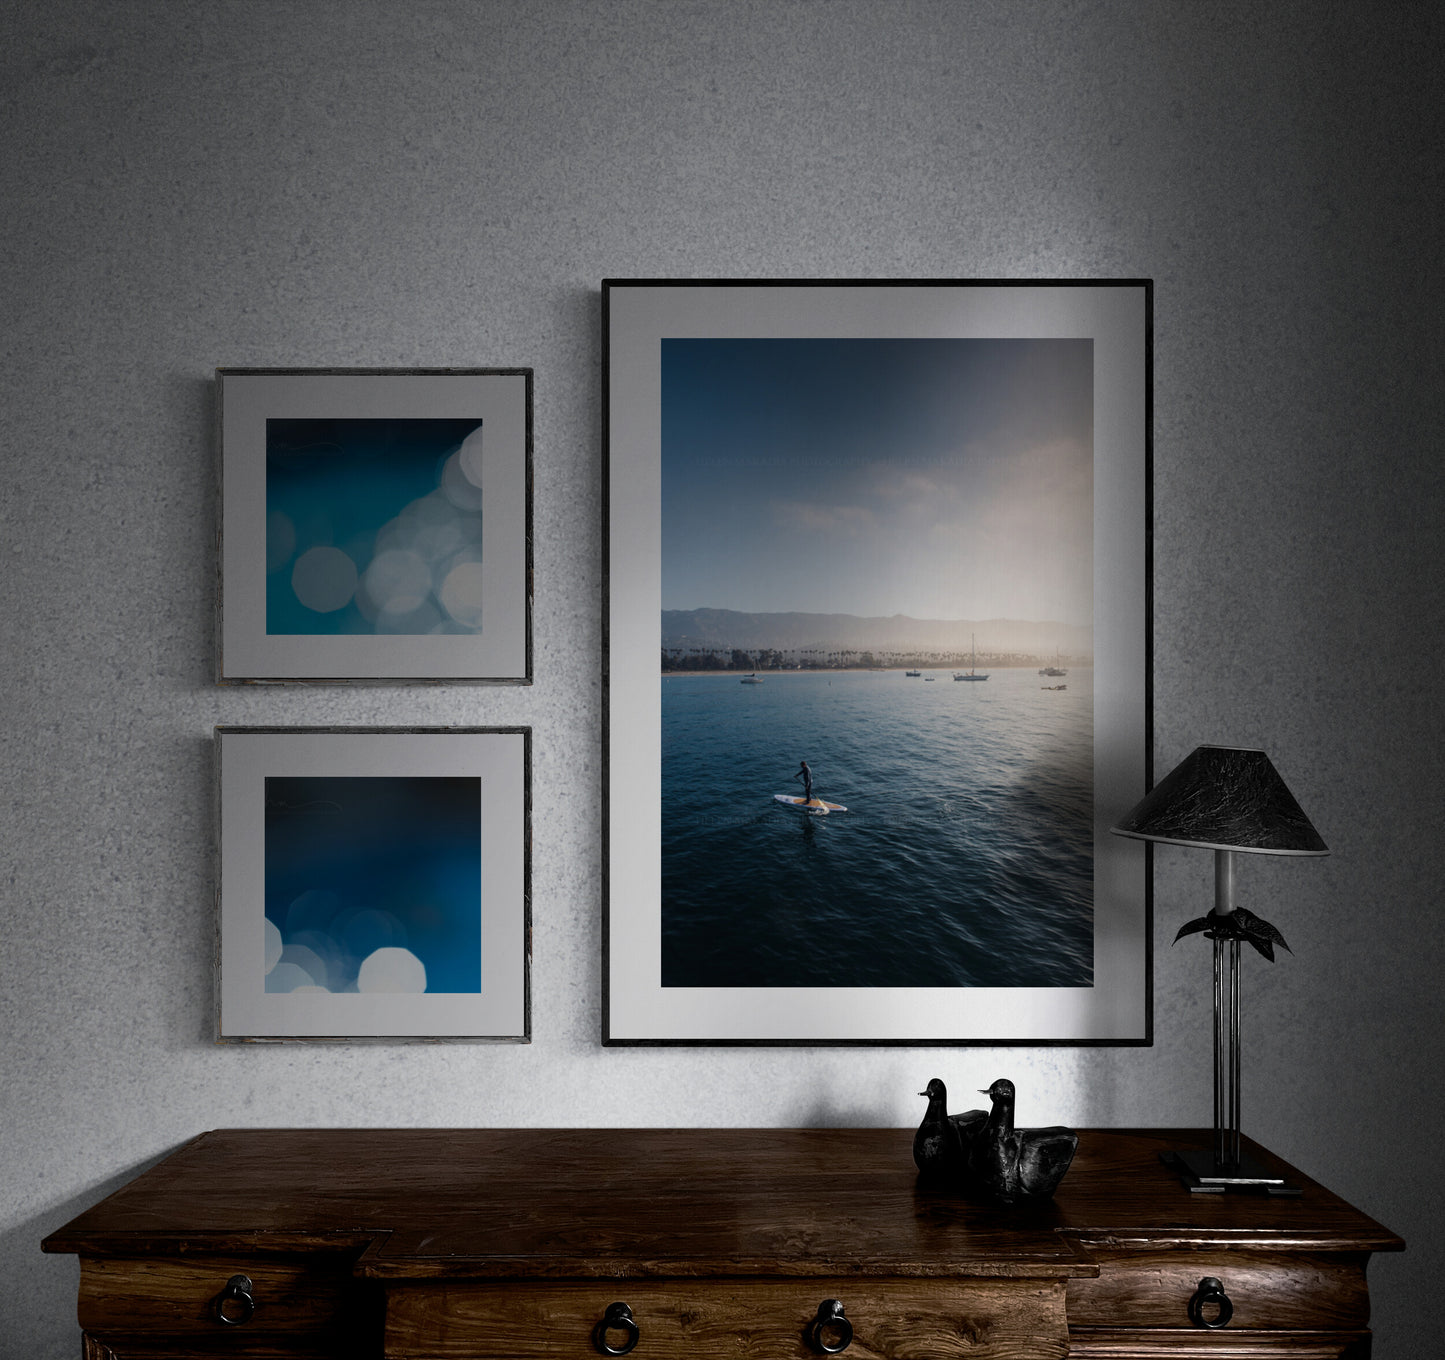 Santa Barbara Photograph as an ocean seascapeas wall art in a home office